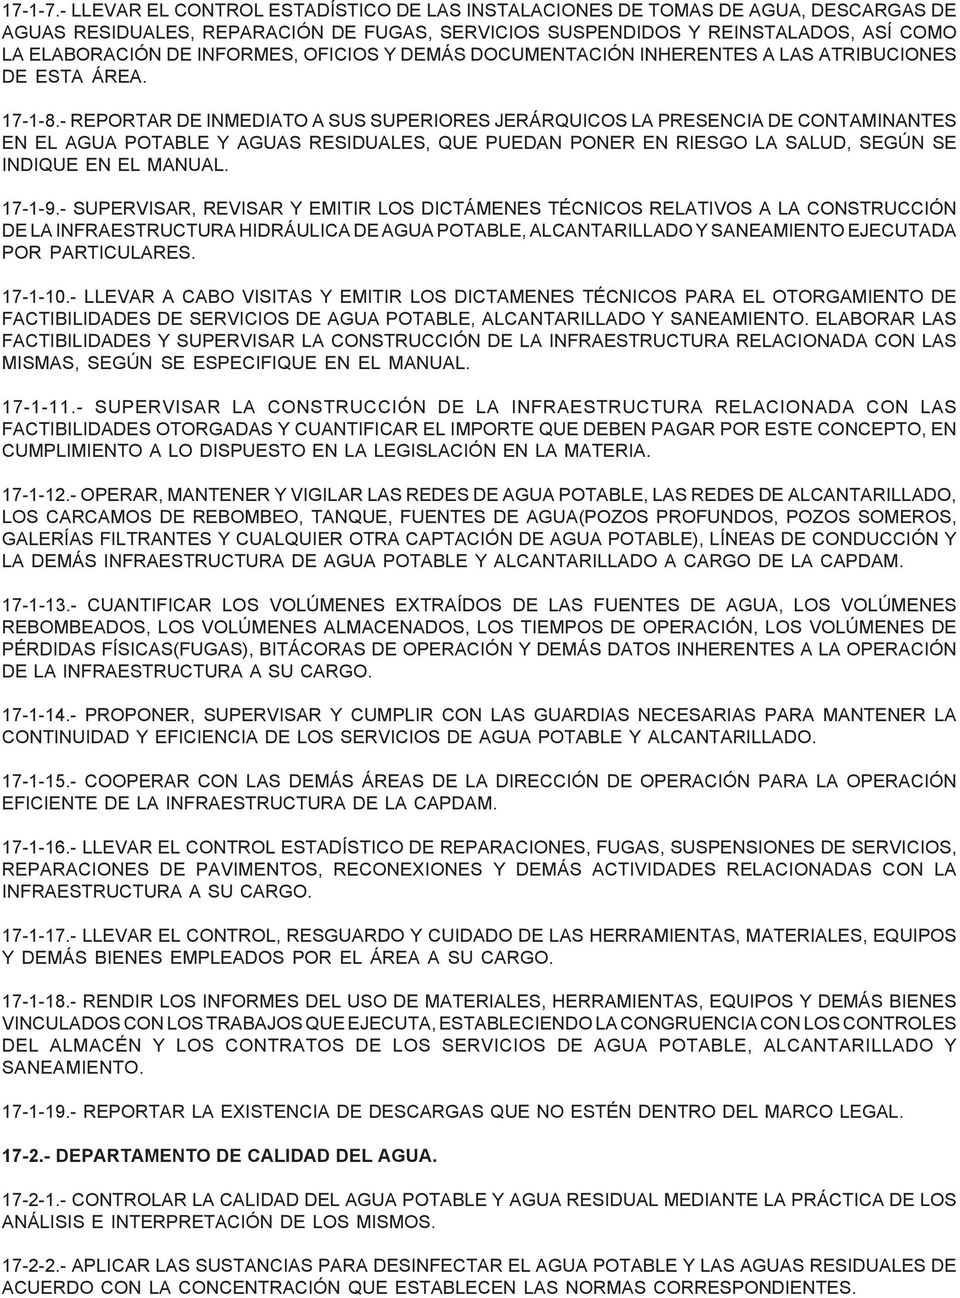 OFICIOS Y DEMÁS DOCUMENTACIÓN INHERENTES A LAS ATRIBUCIONES DE ESTA ÁREA. 17-1-8.